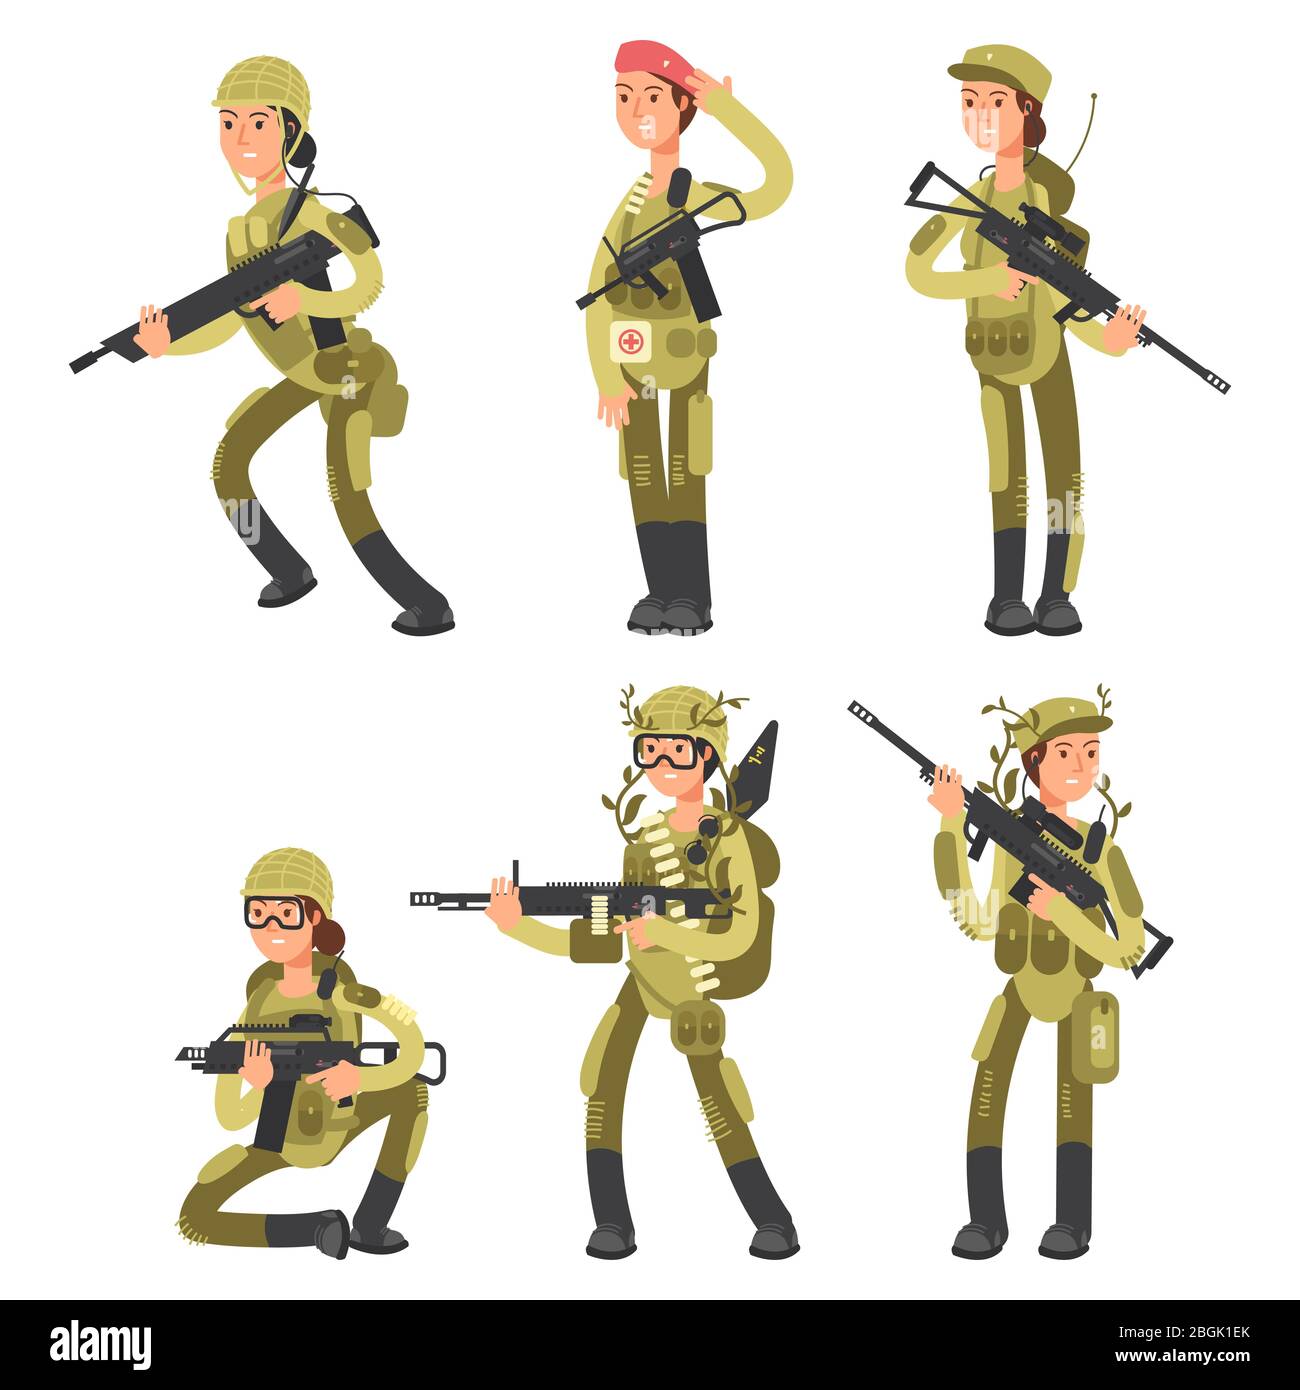 Les personnages de dessin animé des soldats féminins dans diverses actions vecteur isolé sur l'illustration blanche Illustration de Vecteur